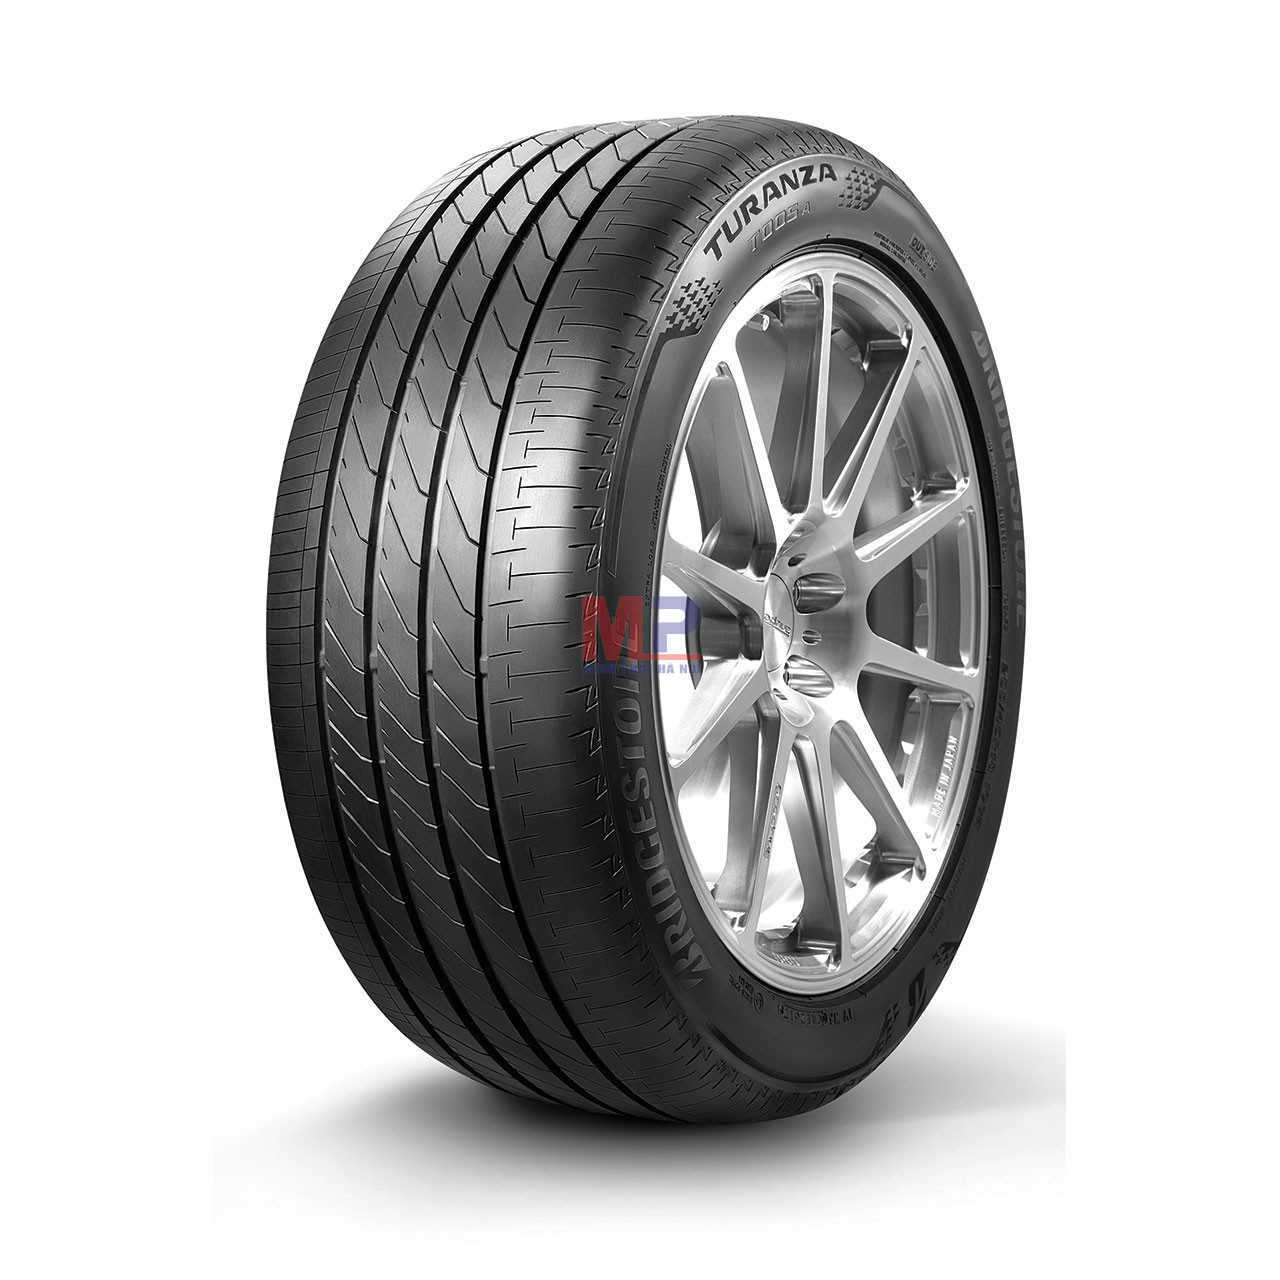 Lốp xe Bridgestone Turanza T005A một dòng lốp thiết kế với độ êm ái vượt trội